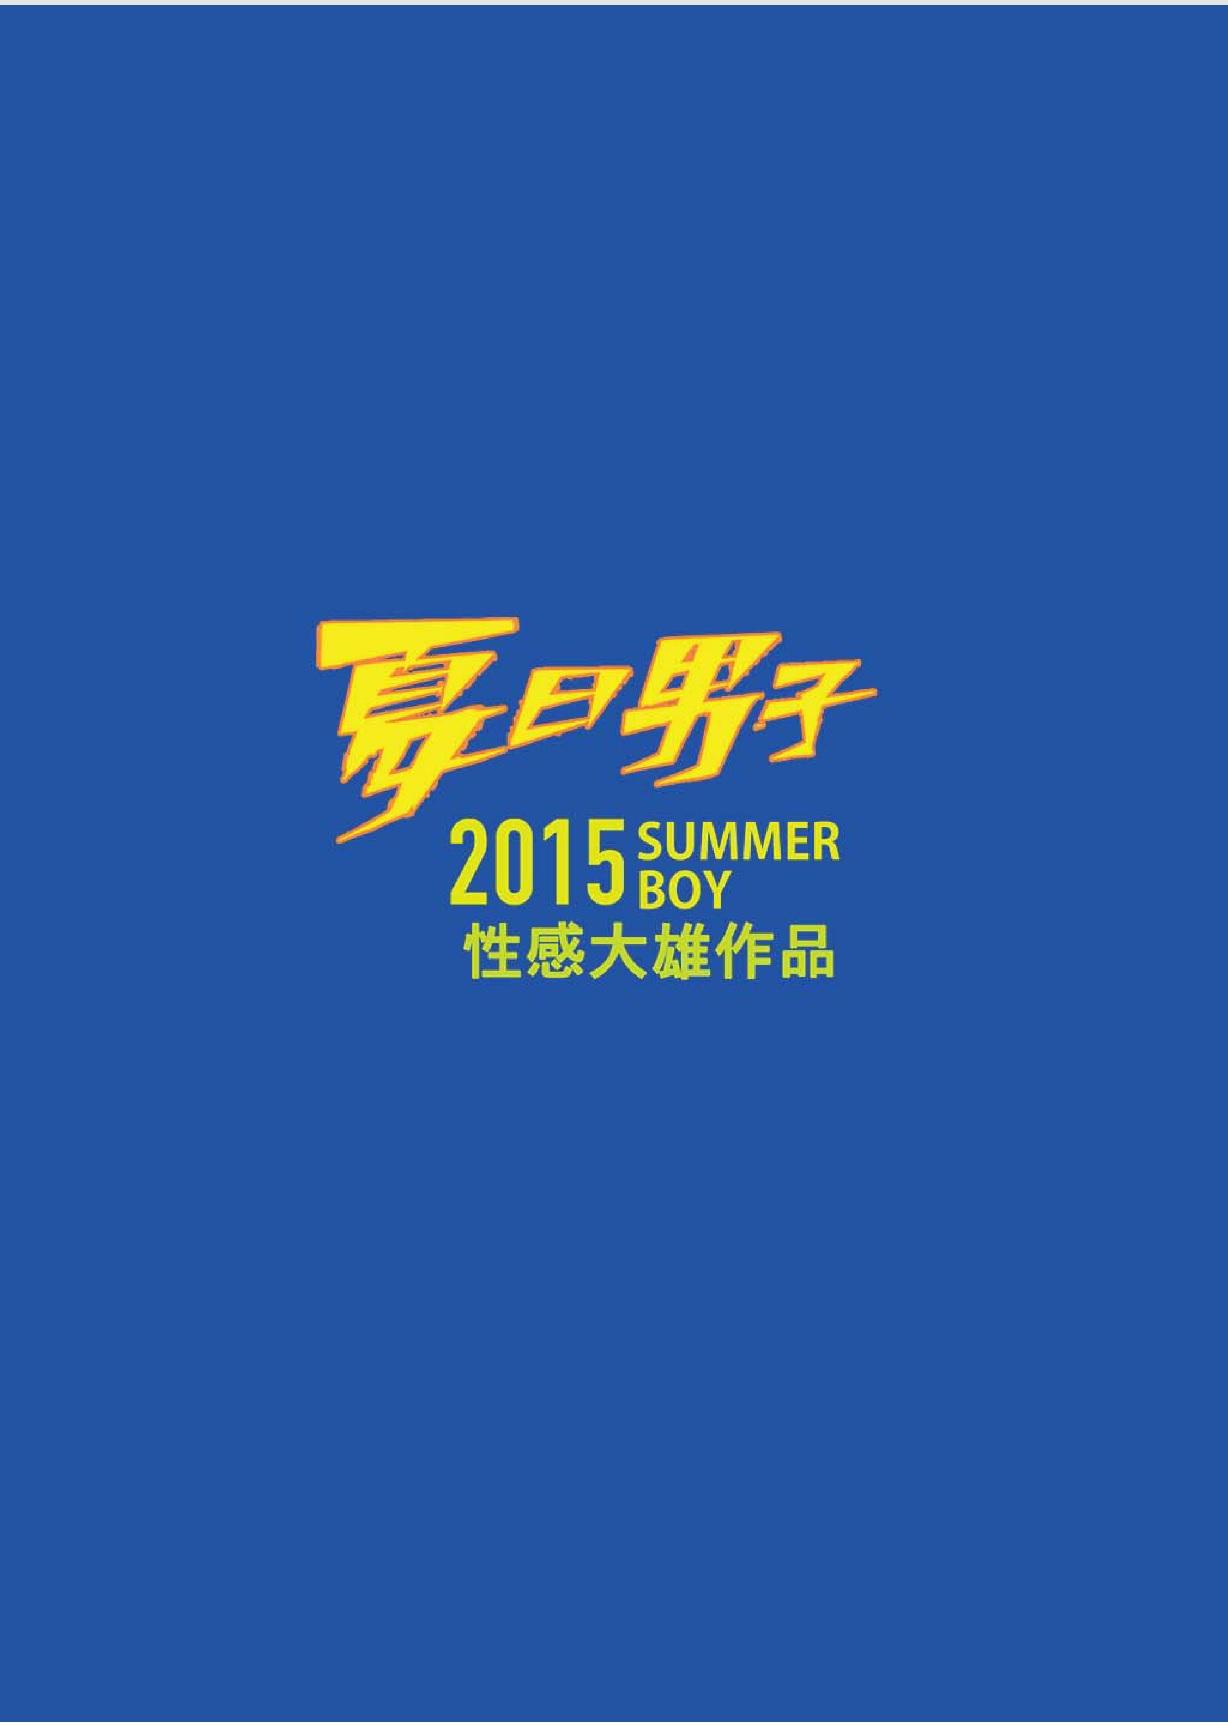 Summer Boy 02 Summer's end Muscle Heat - The Boys Of Summer 2015 37